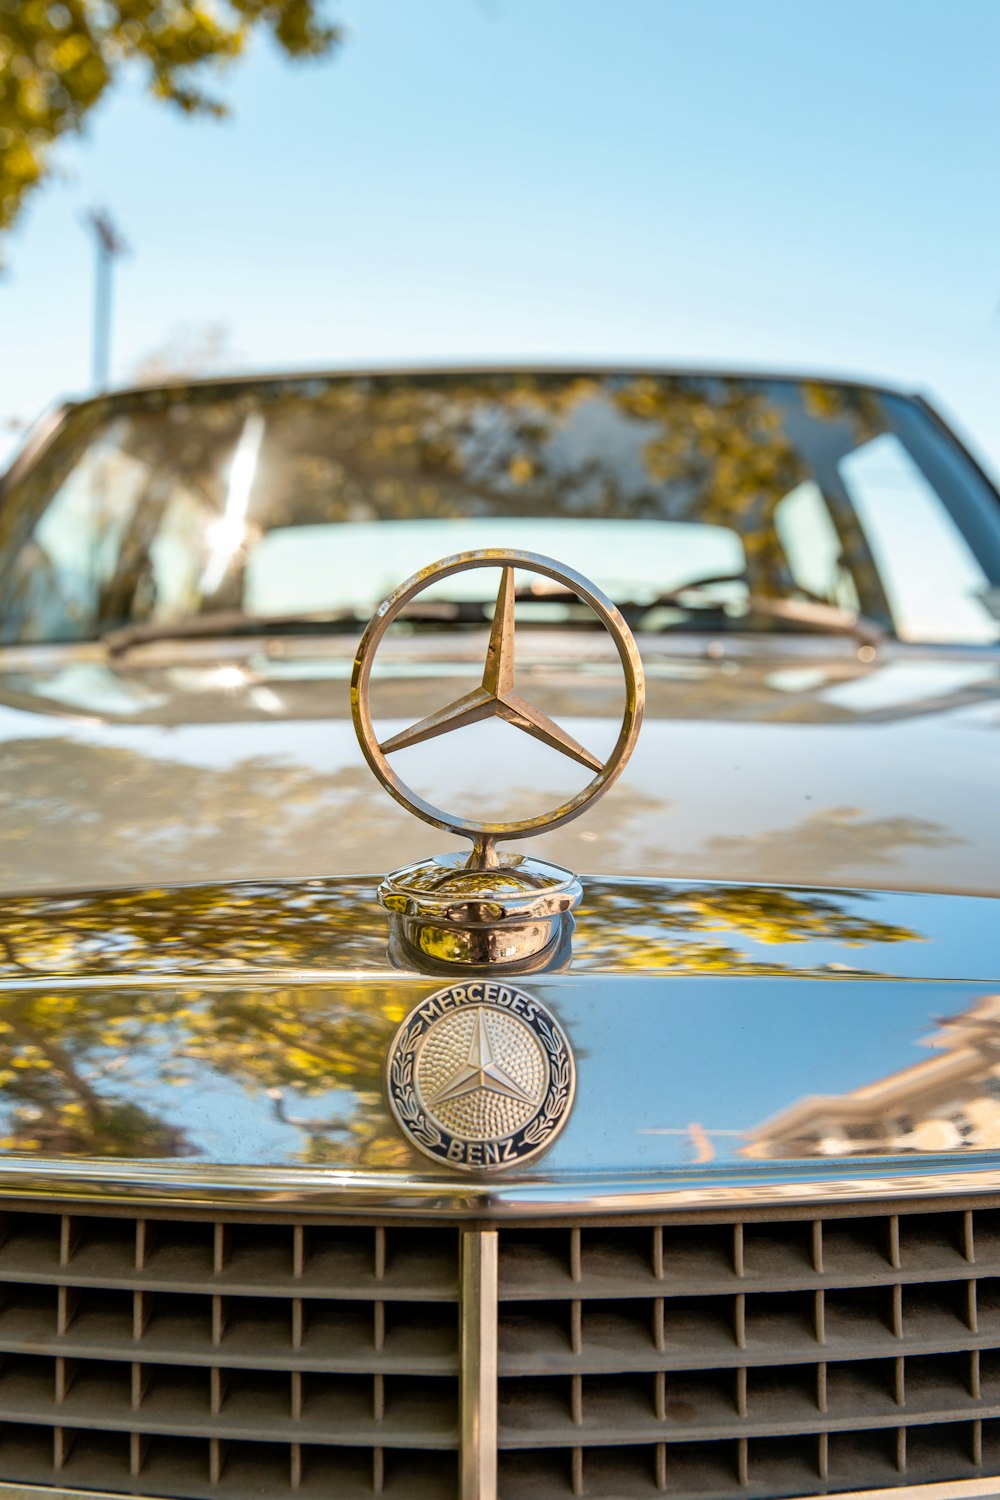 HD wallpaper: Mercedes-Benz emblem, trademark, symbol, logo, vehicle,  automobile